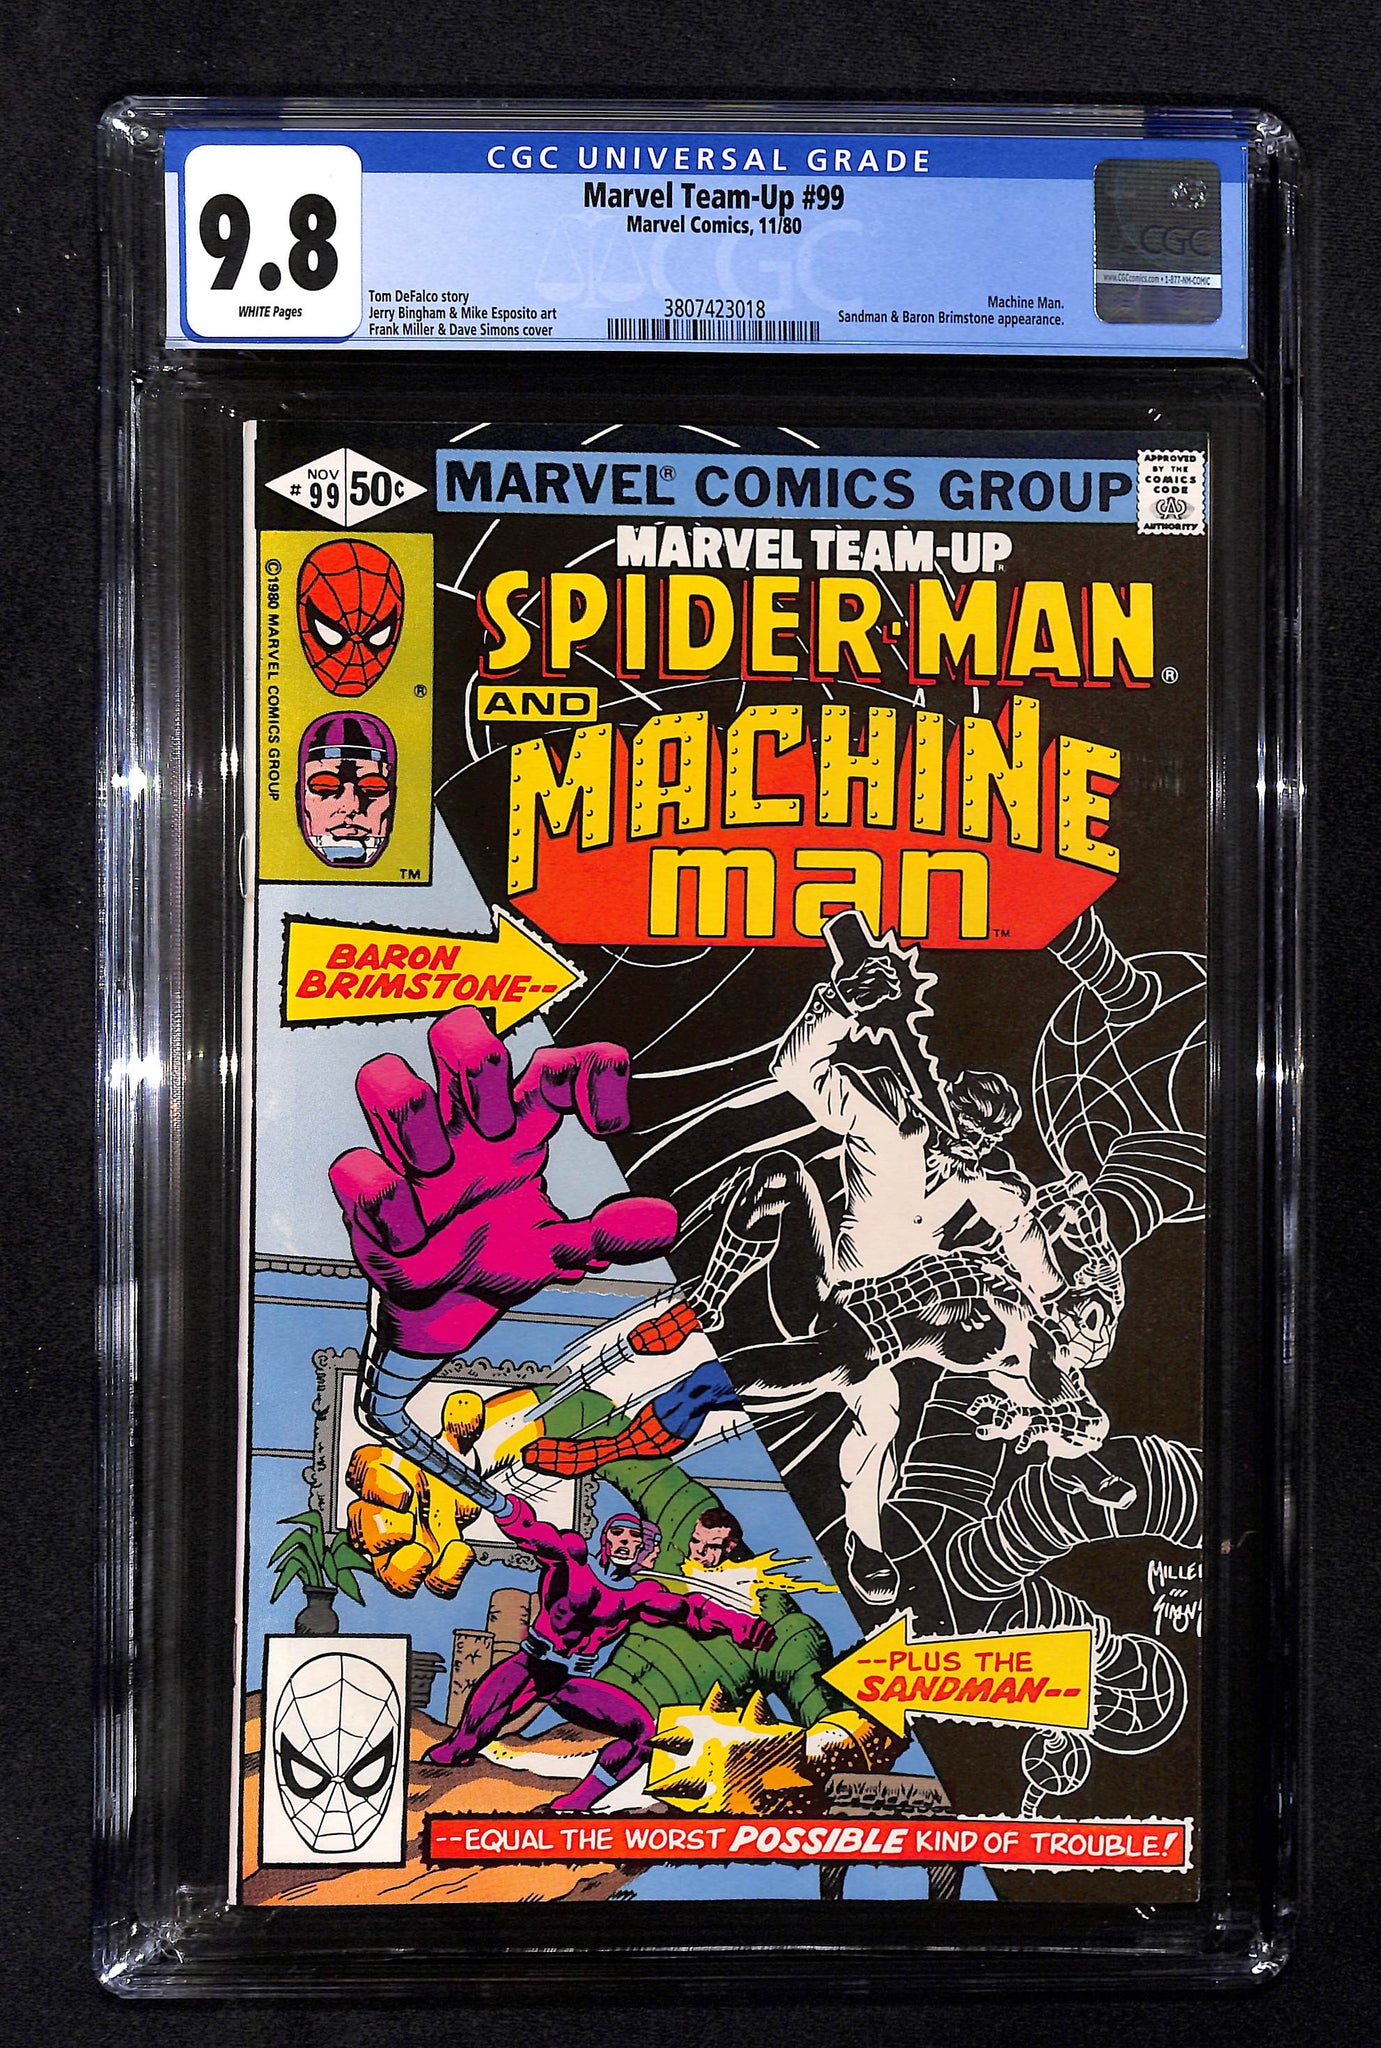 Marvel Team-Up #99 CGC 9.8 Spider-Man and Machine Man